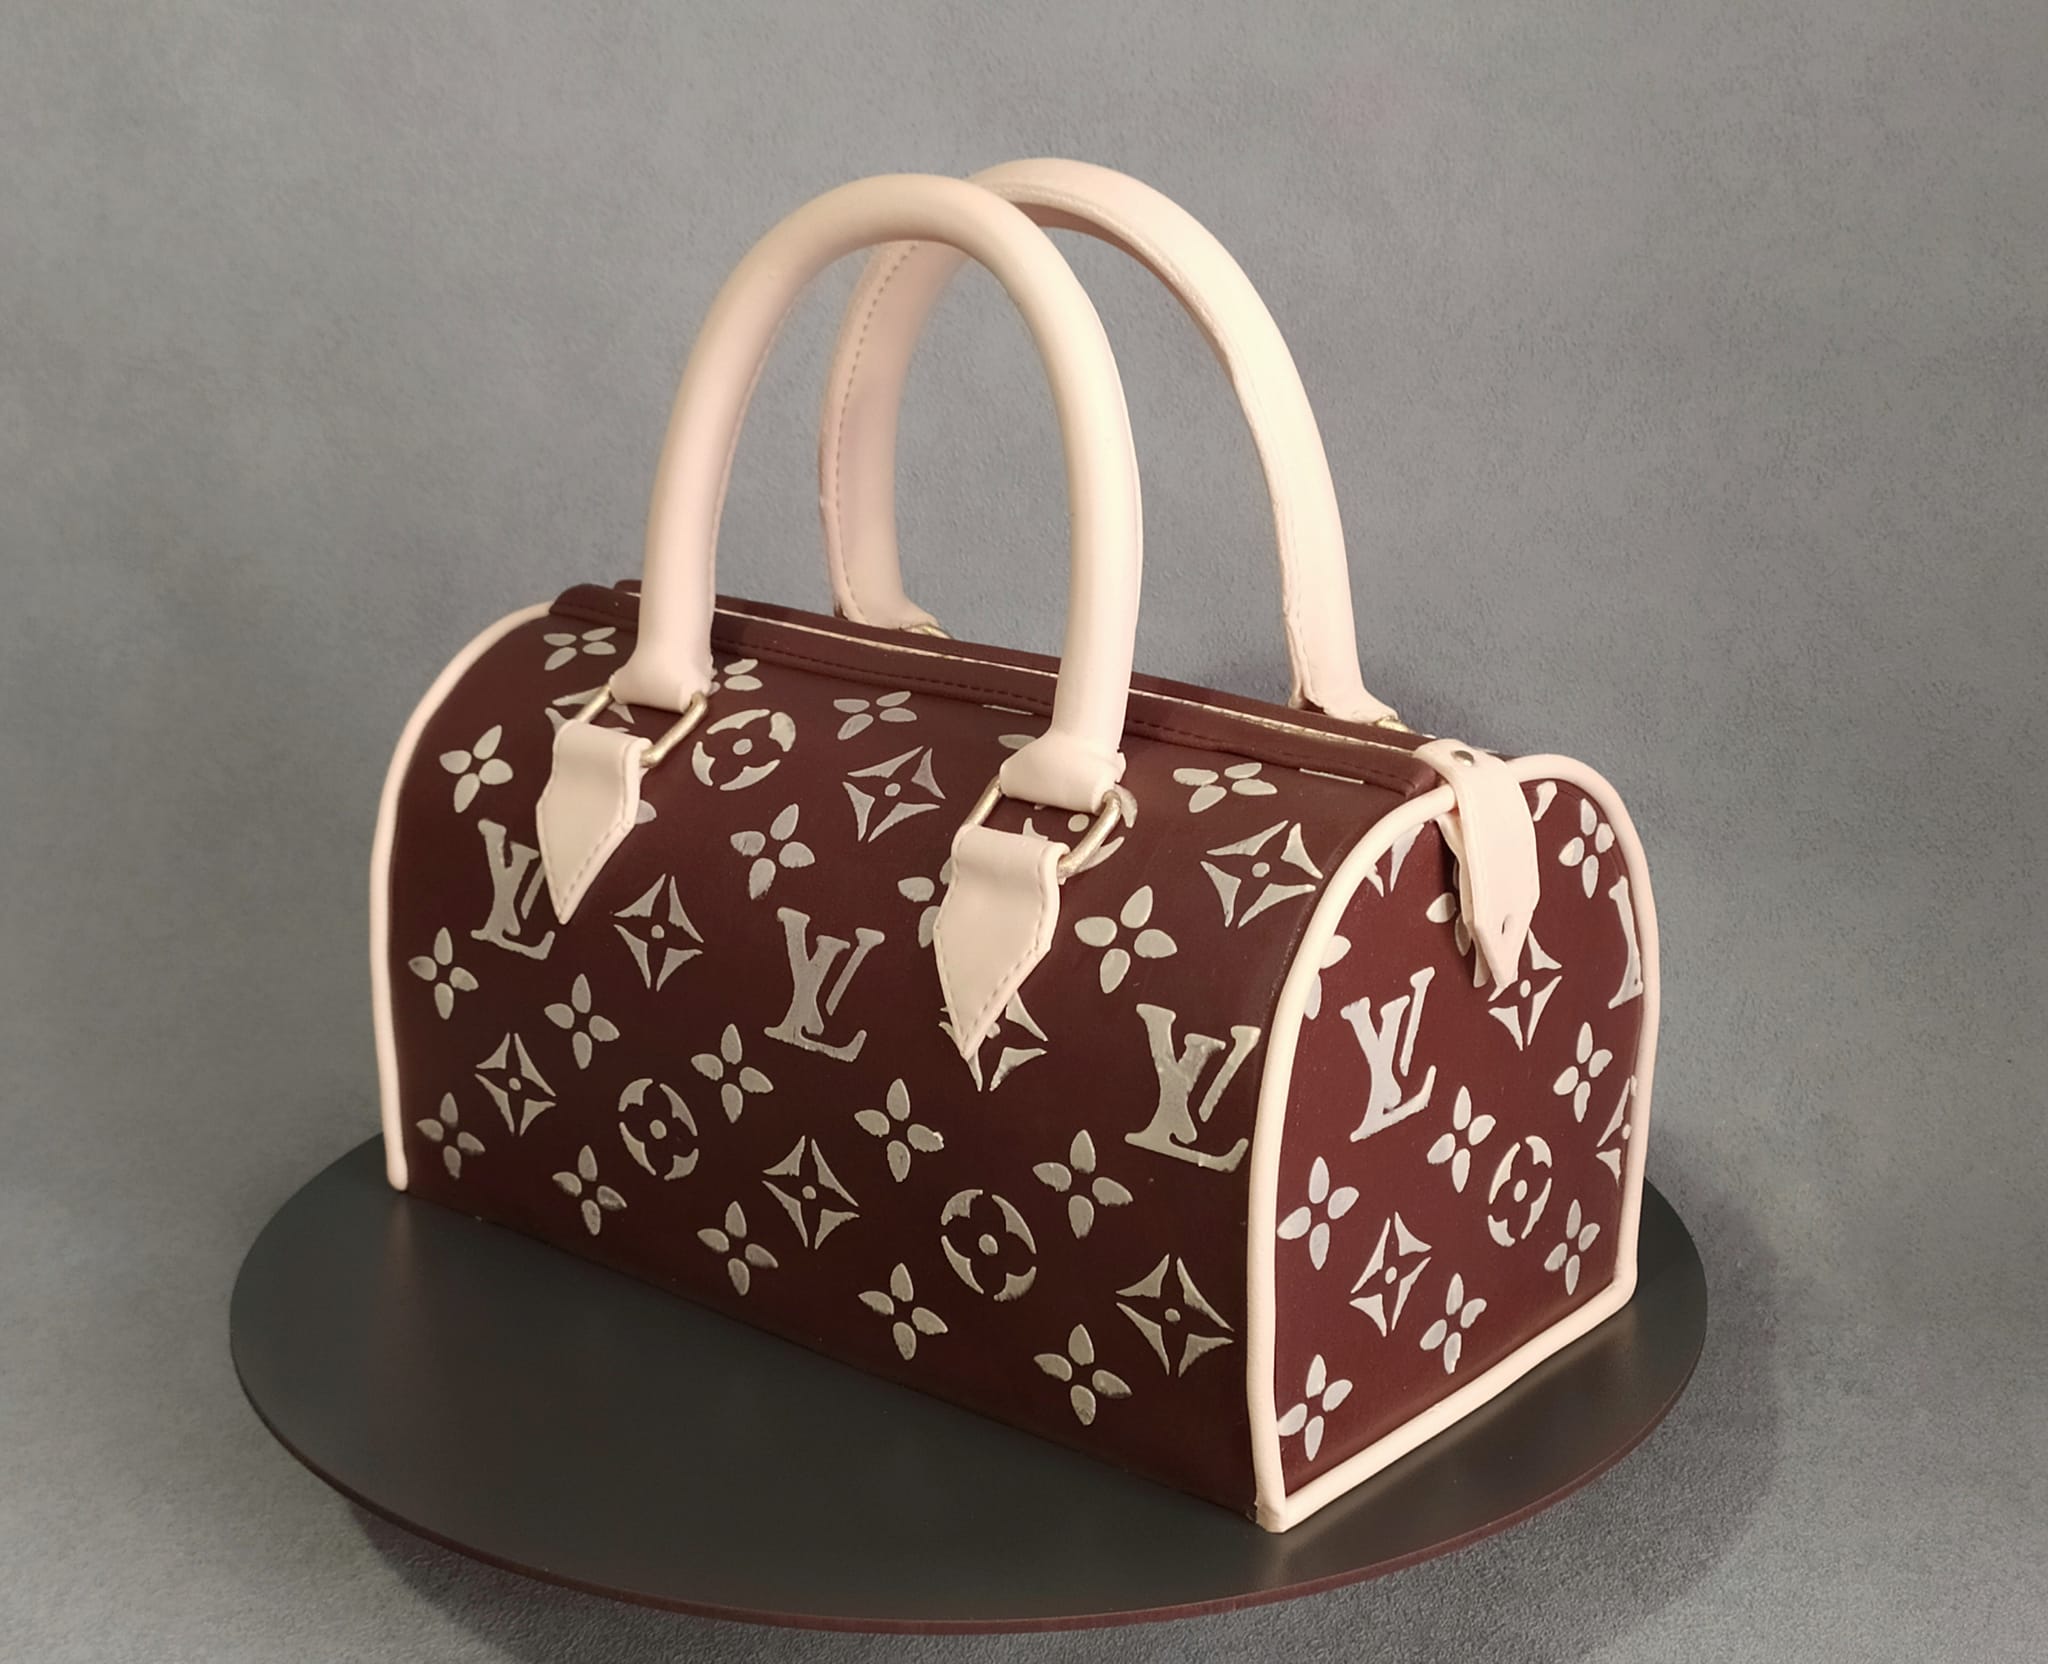 Новости Днепра про Кондитер из Днепра сделал сладкую сумочку Louis Vuitton (ФОТО)